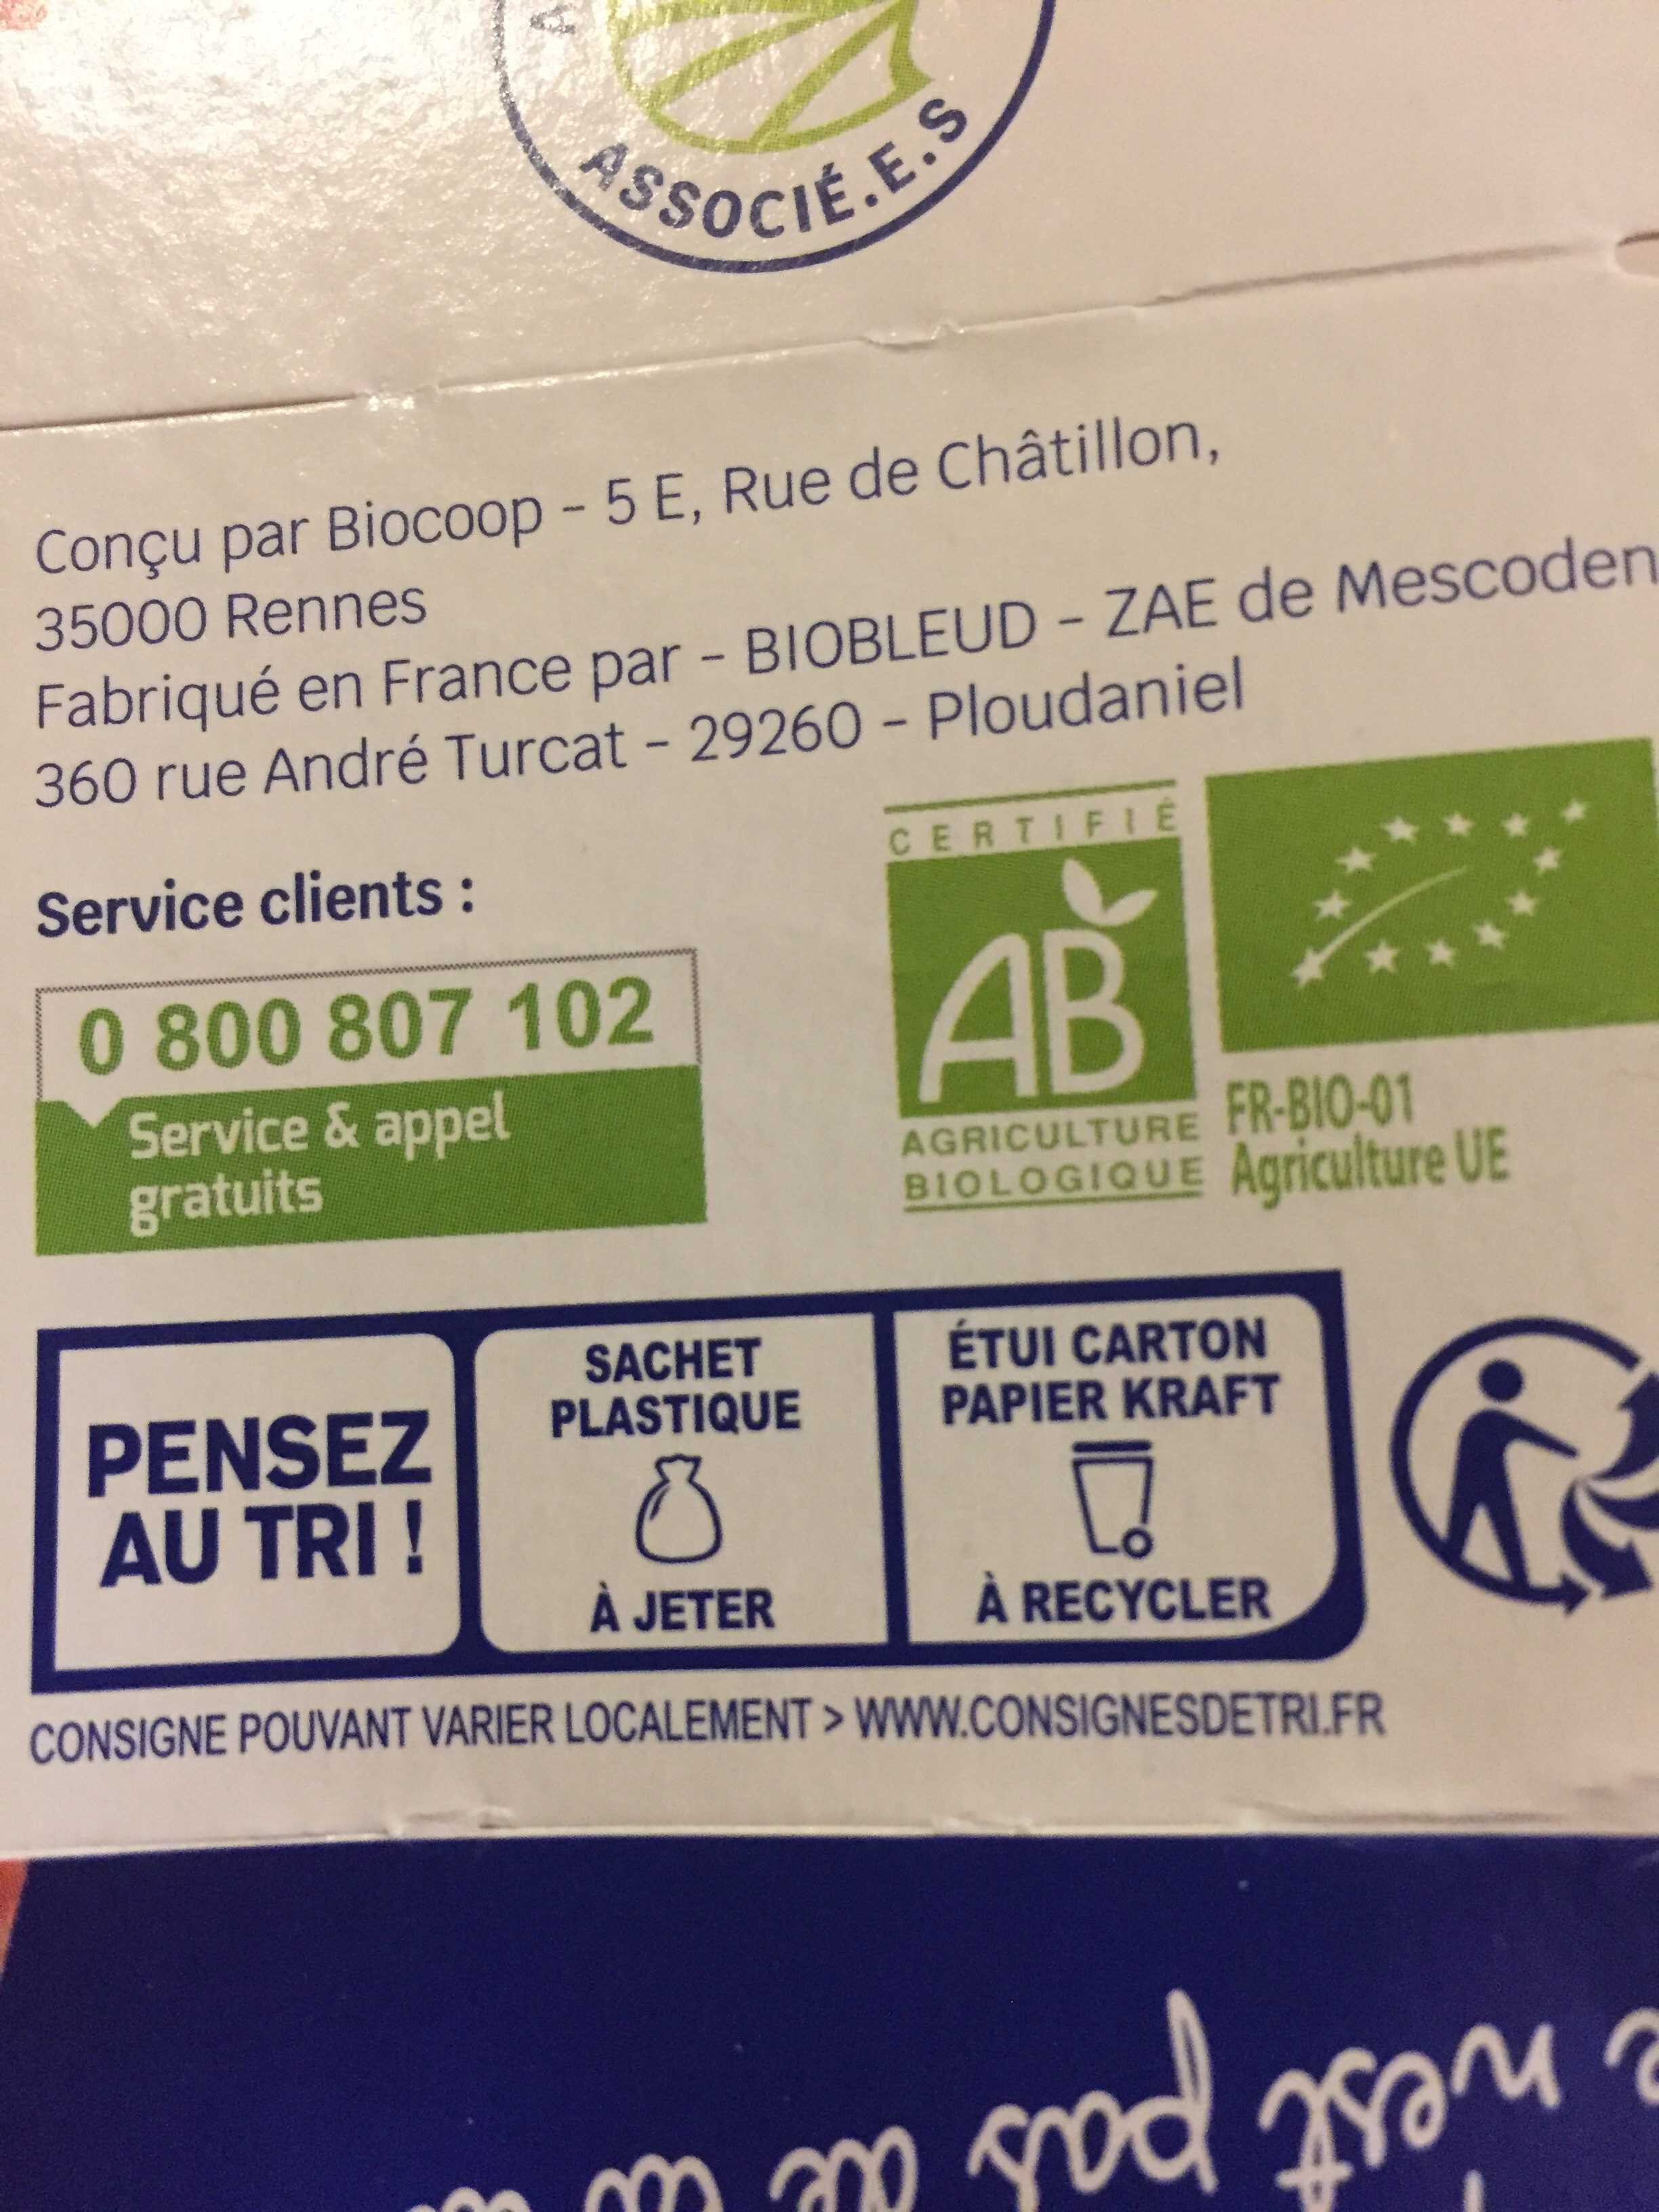 Pâte feuilletée pur beurre 250g CC - Istruzioni per il riciclaggio e/o informazioni sull'imballaggio - fr